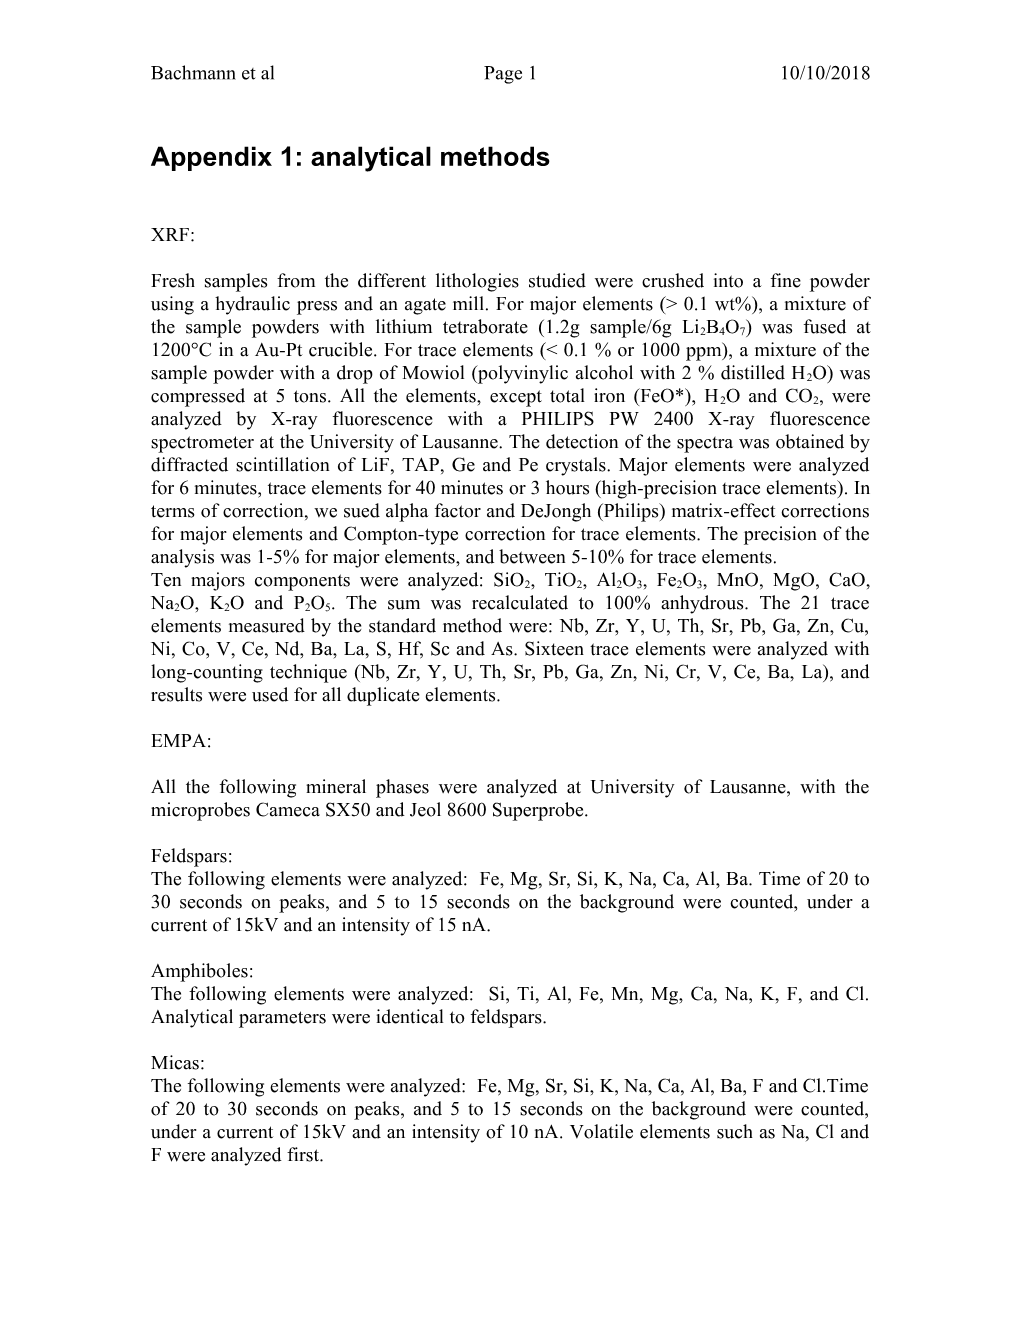 Appendix X: Analytical Methods